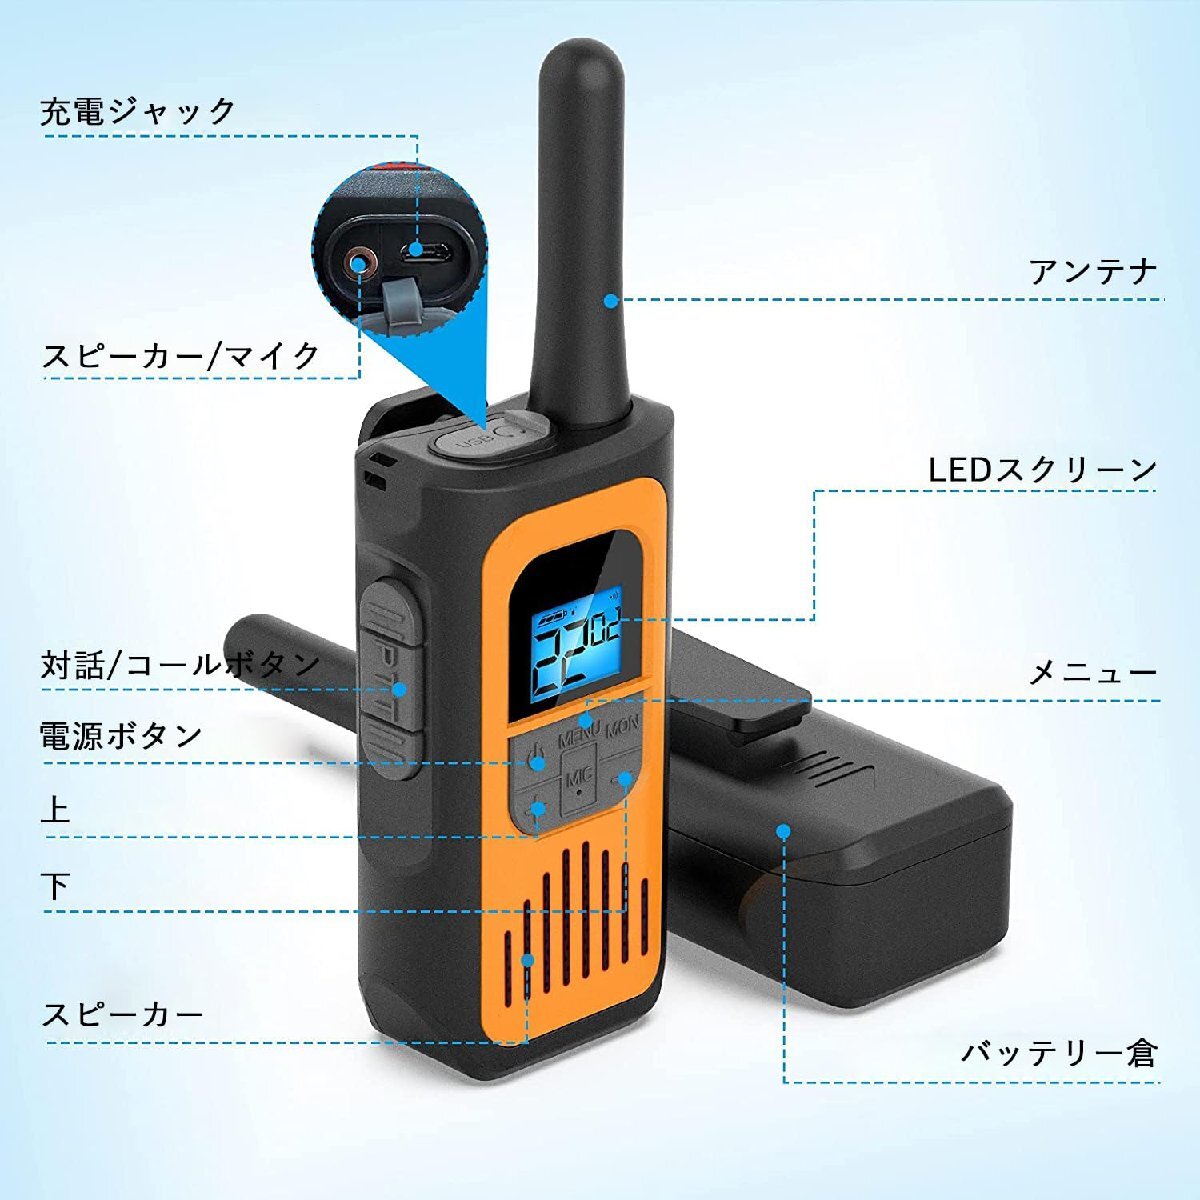 トランシーバー 無線機 特定小電力 免許不要 充電式 簡単操作 災害地震 緊急対応 1200mAH リチウムイオンバッテリー・USB充電ケーブル・イ_画像2